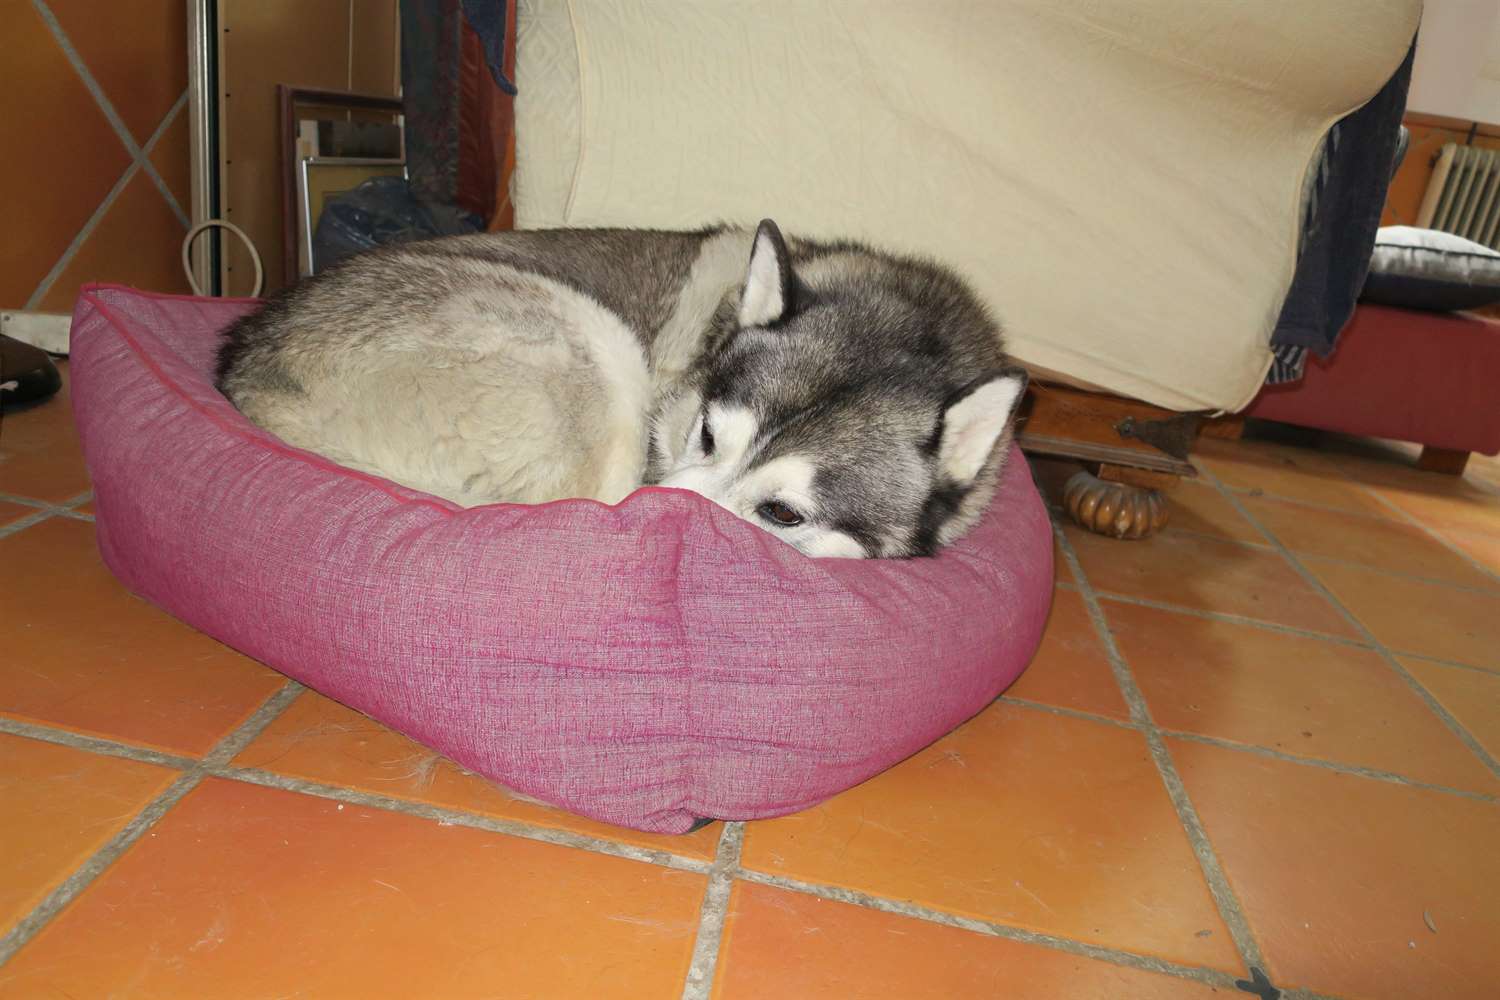 Khumbu seems to enjoy squeezing in to Rita's bed